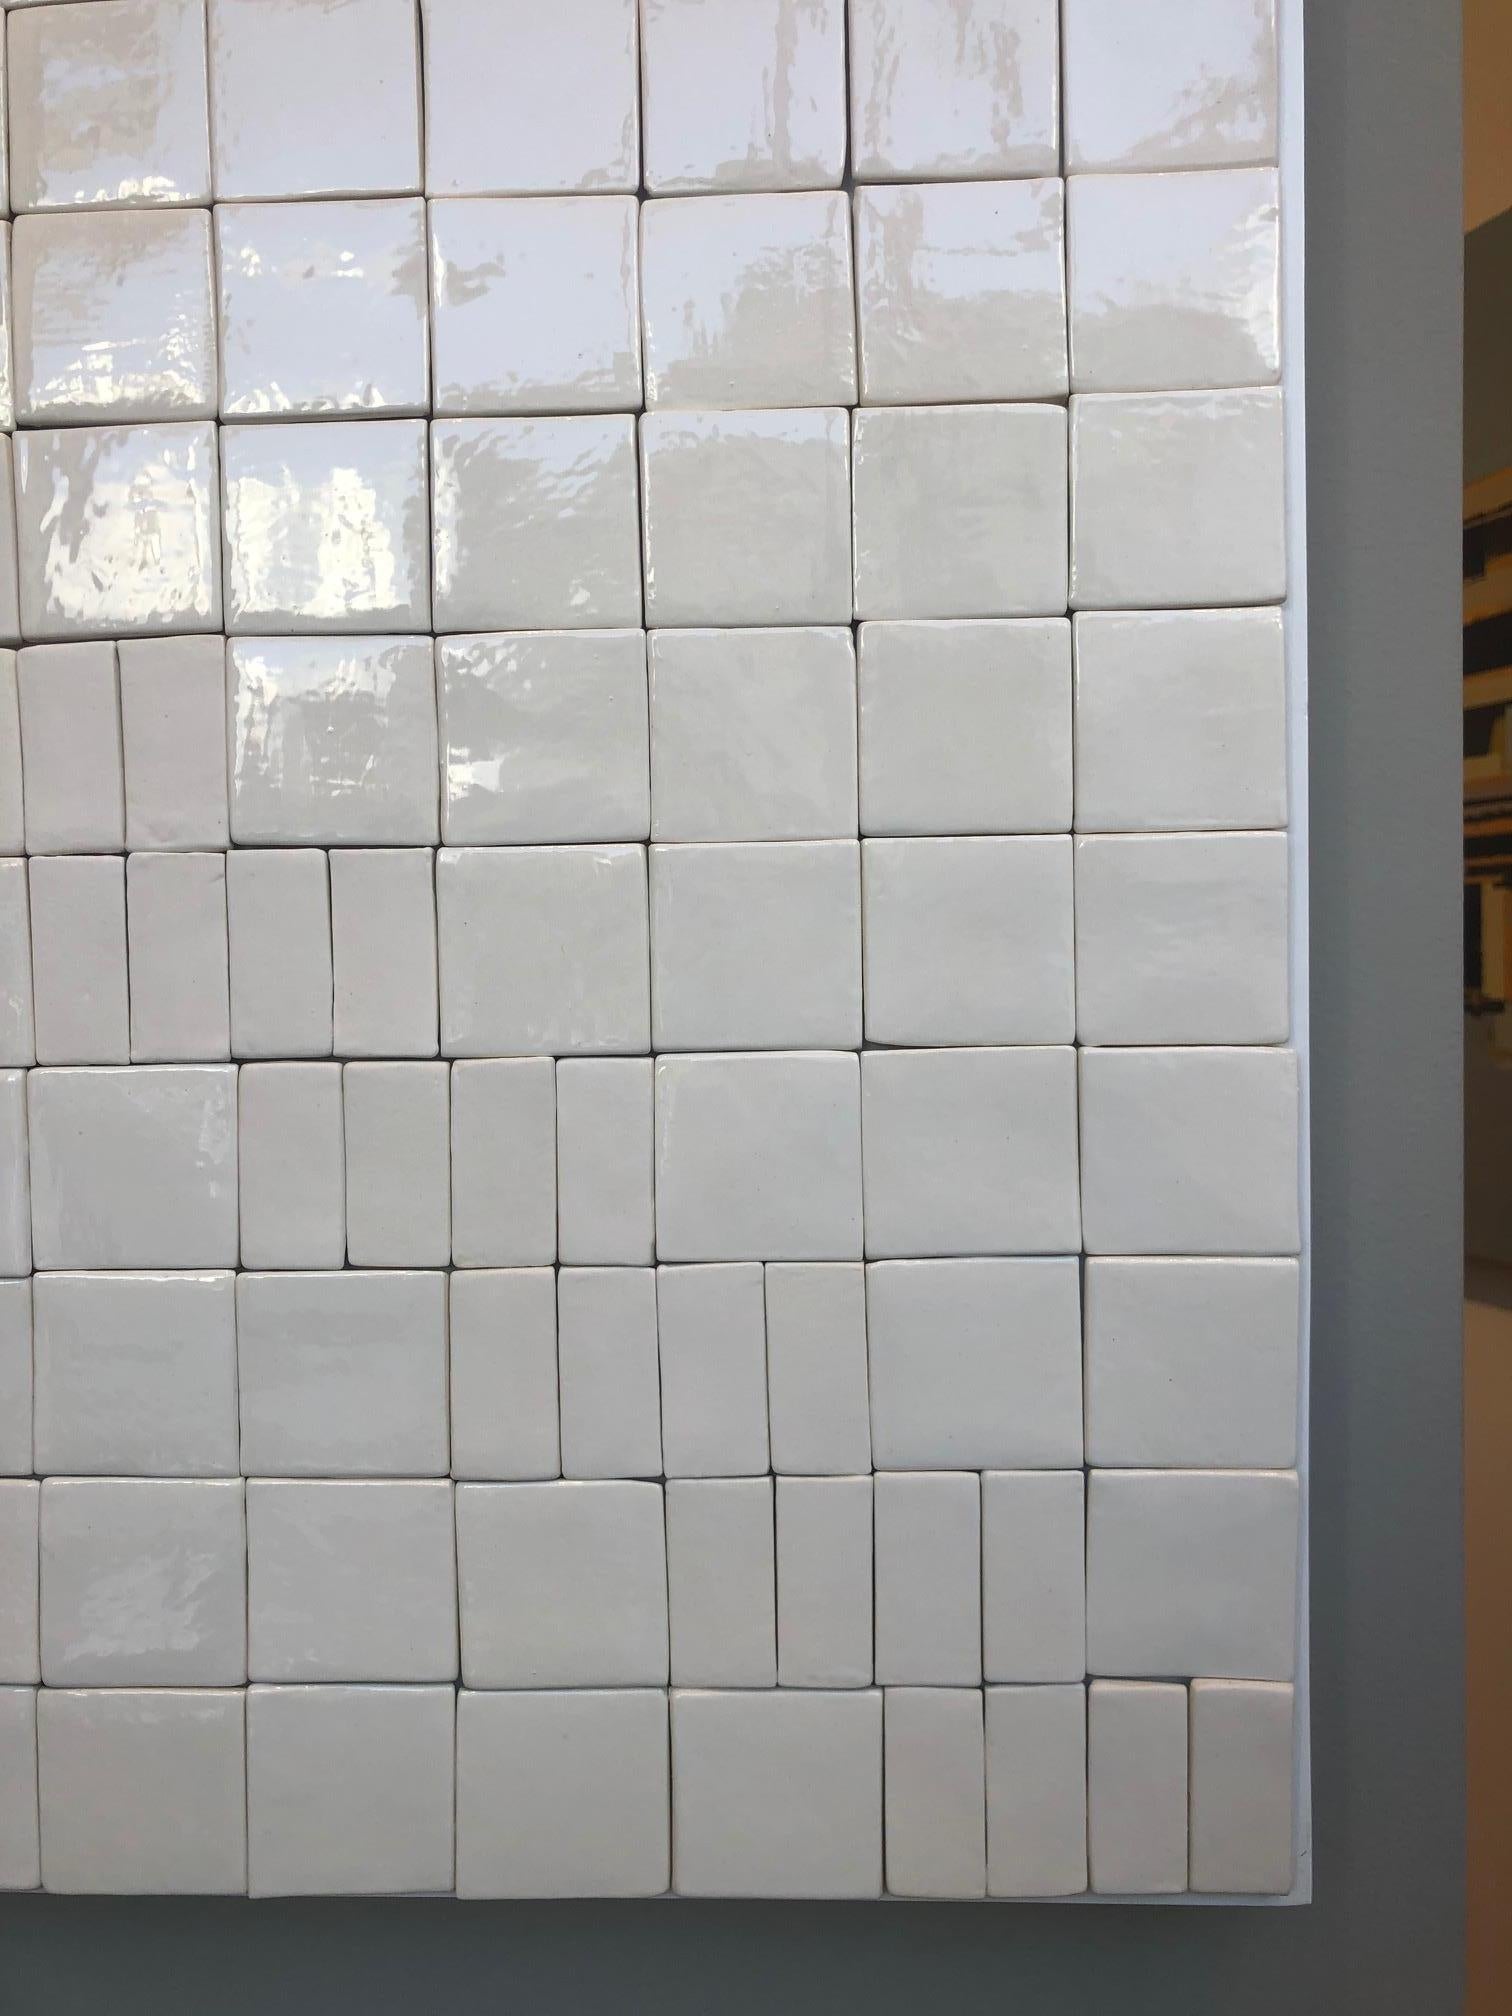 Minimal Abstract Ceramic 36 x 36 inch Wandskulptur aus glänzenden und matten weißen Keramikfliesen, die auf eine weiße Holzplatte montiert sind. Ein neutrales Werk, das ein 